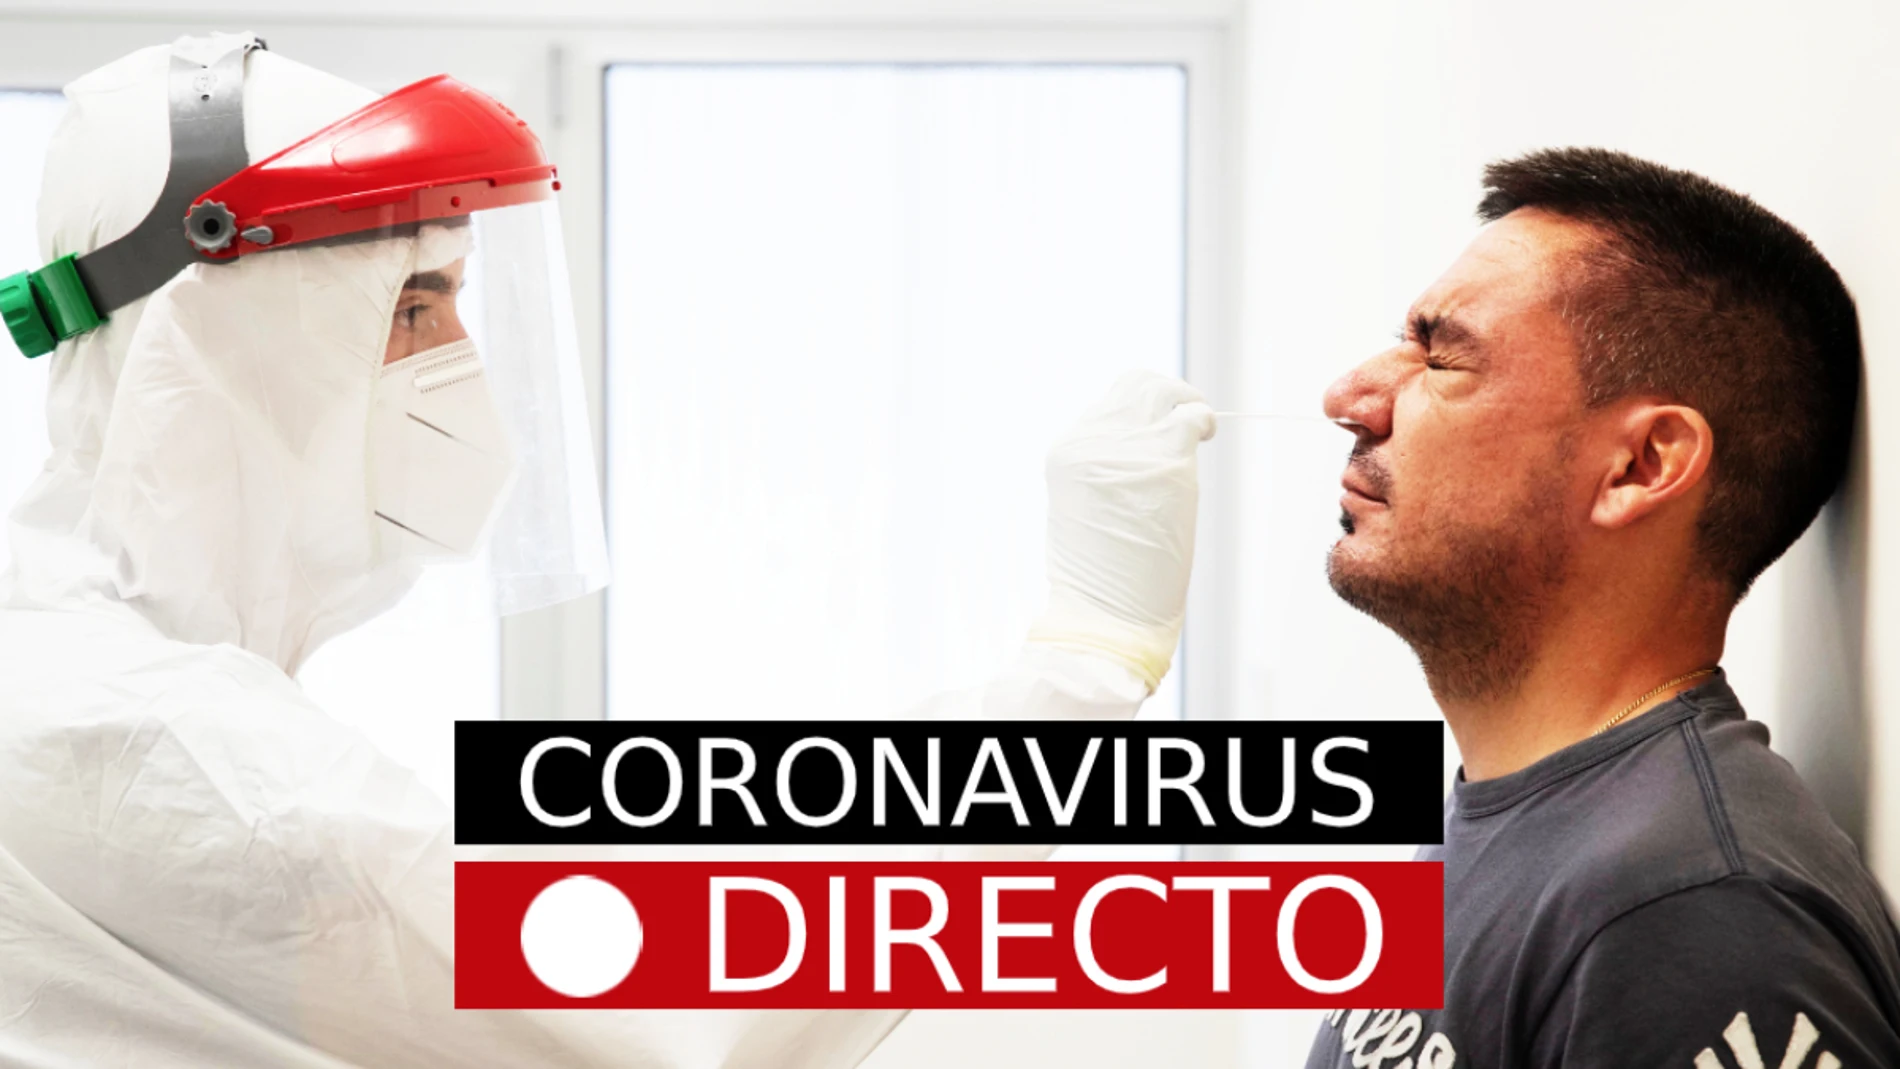 Coronavirus hoy: noticias de última hora, contagios y brotes, en directo